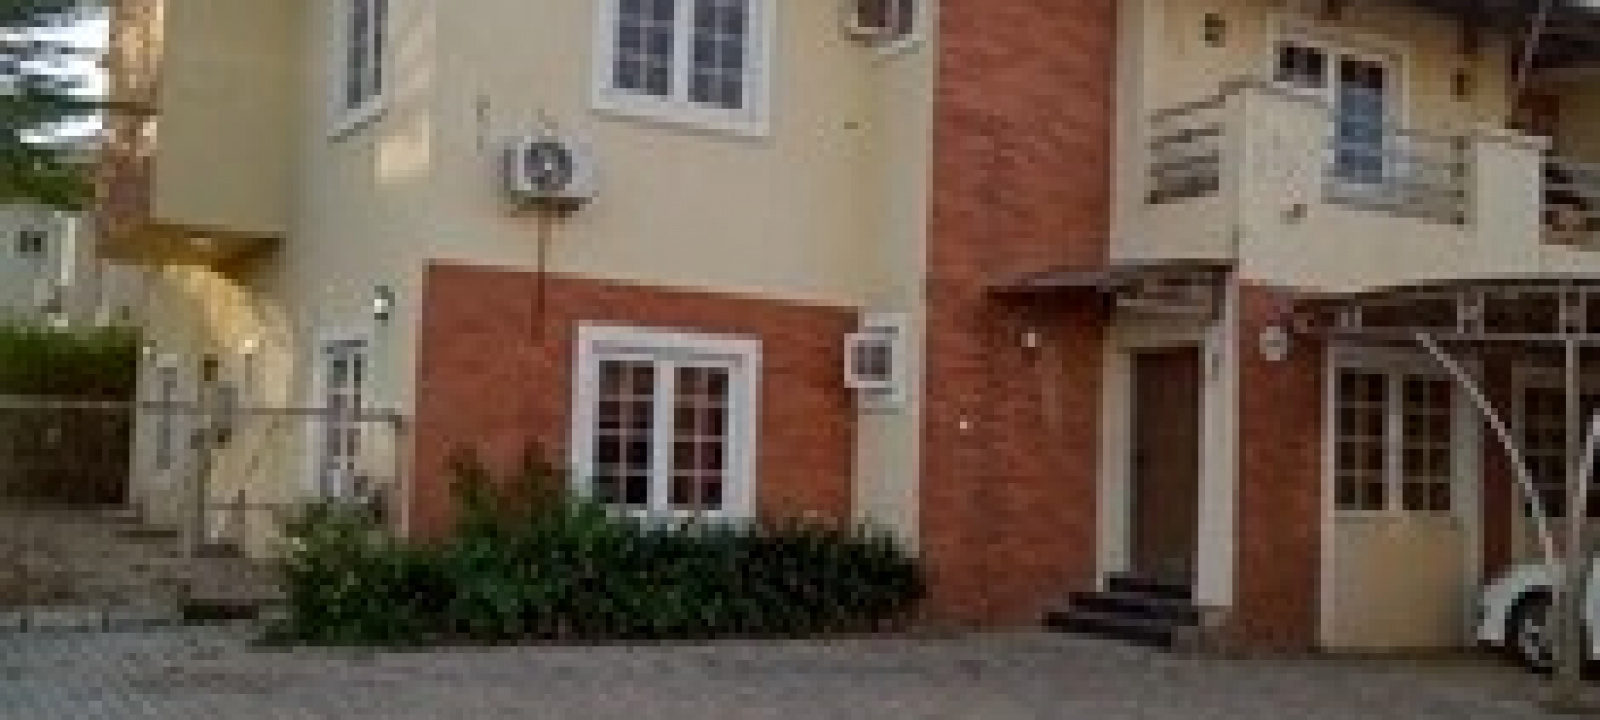 Lakeview Estate, Kado, Abuja, Abuja FCT, ,House,For Sale,Lakeview Estate, Kado,1031